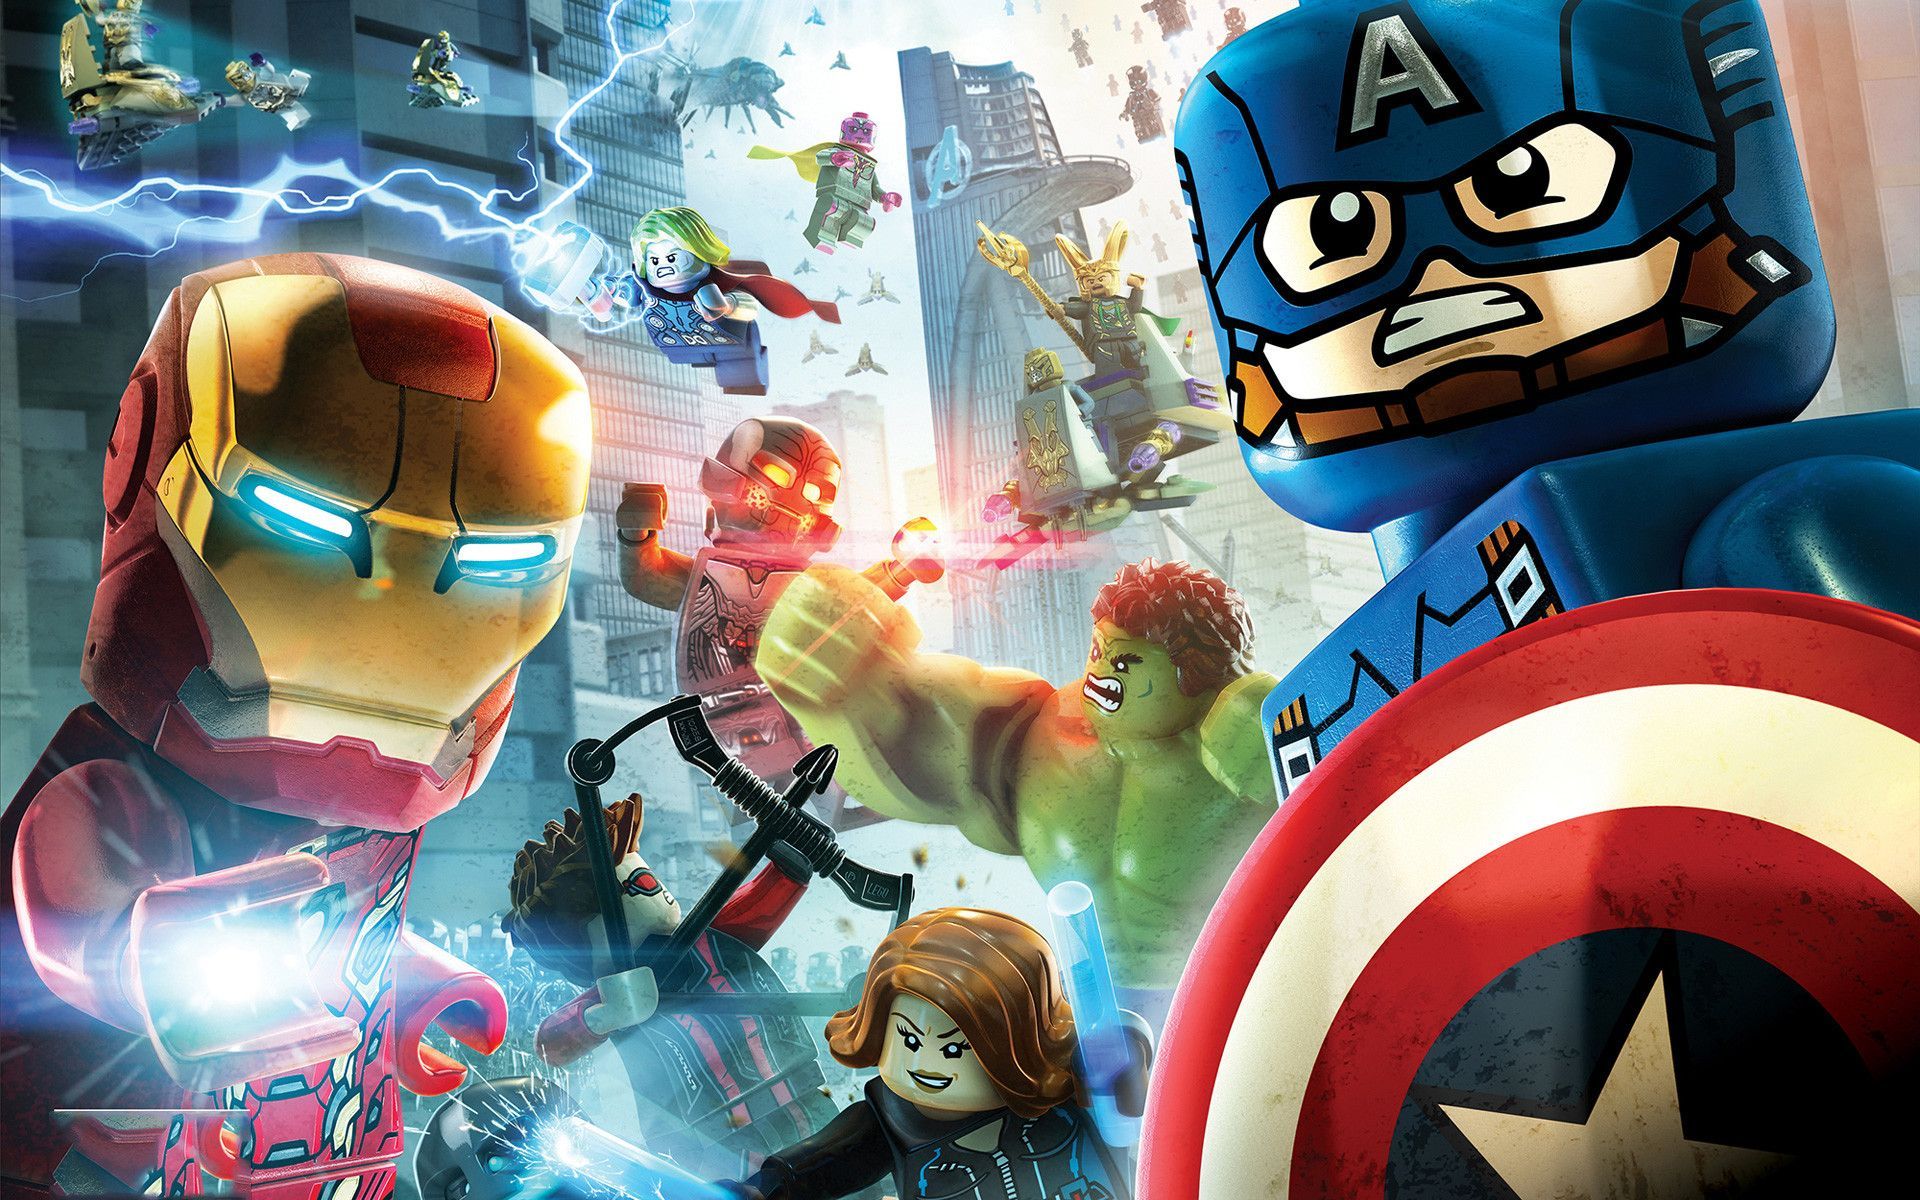 LEGO Marvel Avengers Wallpaper Free LEGO Marvel Avengers Background